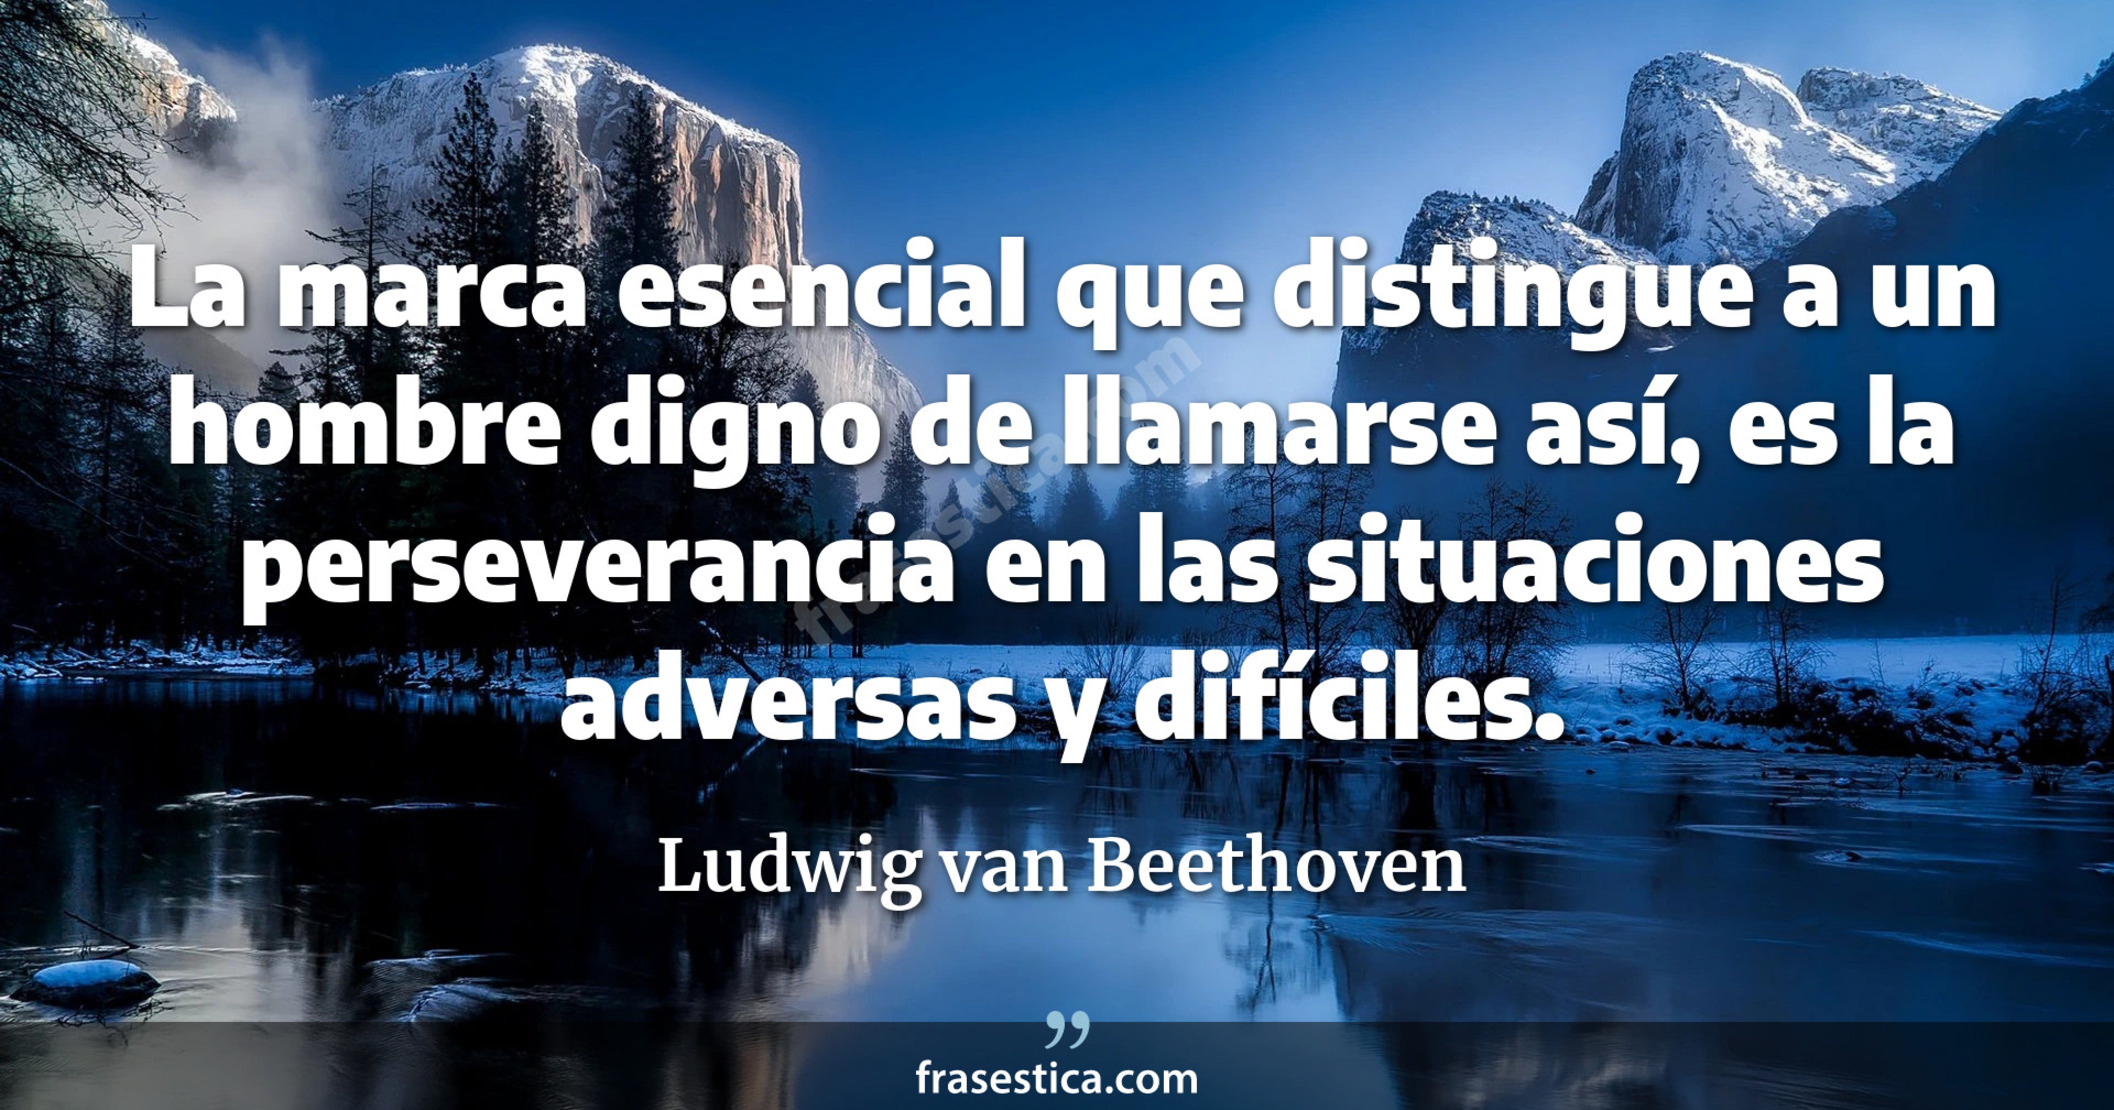 La marca esencial que distingue a un hombre digno de llamarse así, es la perseverancia en las situaciones adversas y difíciles. - Ludwig van Beethoven